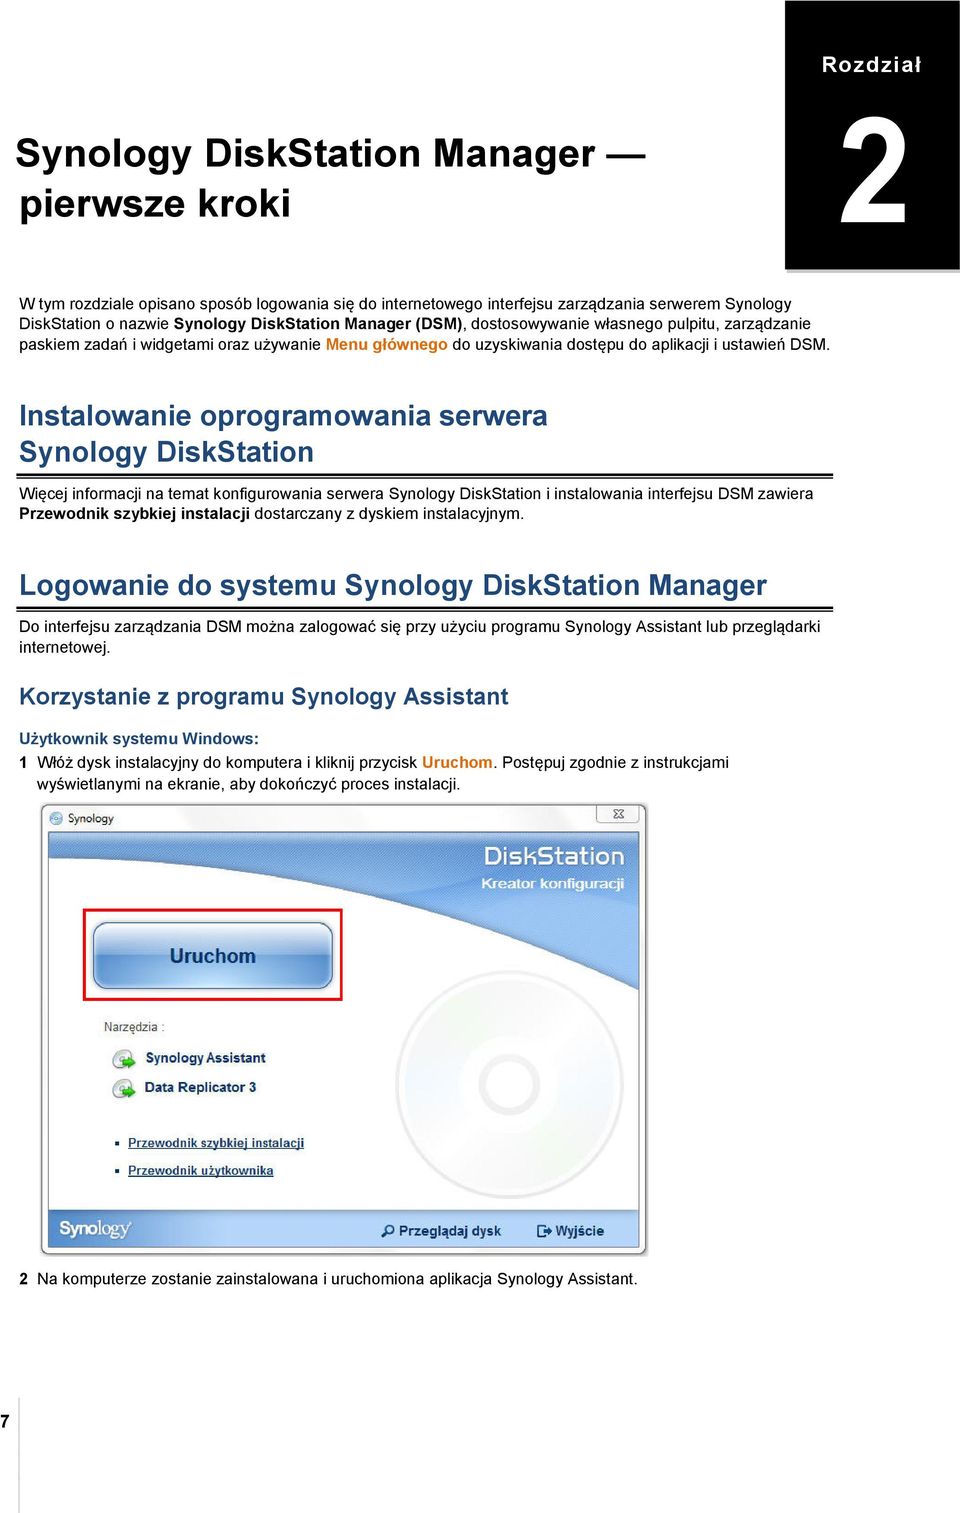 Instalowanie oprogramowania serwera Synology DiskStation Więcej informacji na temat konfigurowania serwera Synology DiskStation i instalowania interfejsu DSM zawiera Przewodnik szybkiej instalacji